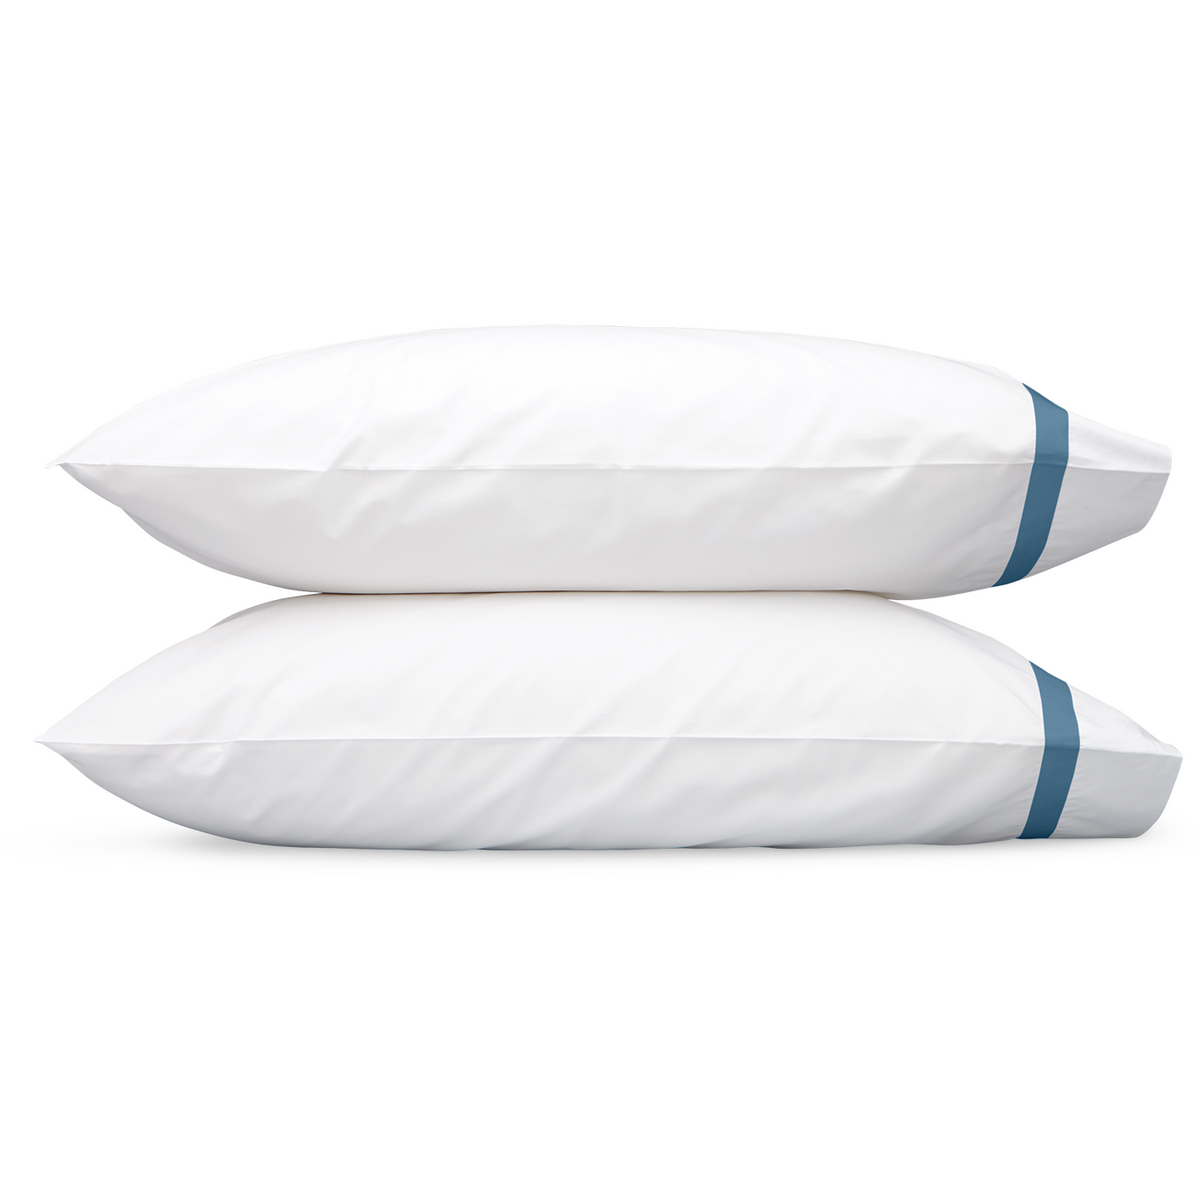 Matouk Lowell Bedding Pillowcase Sea Fine Linens